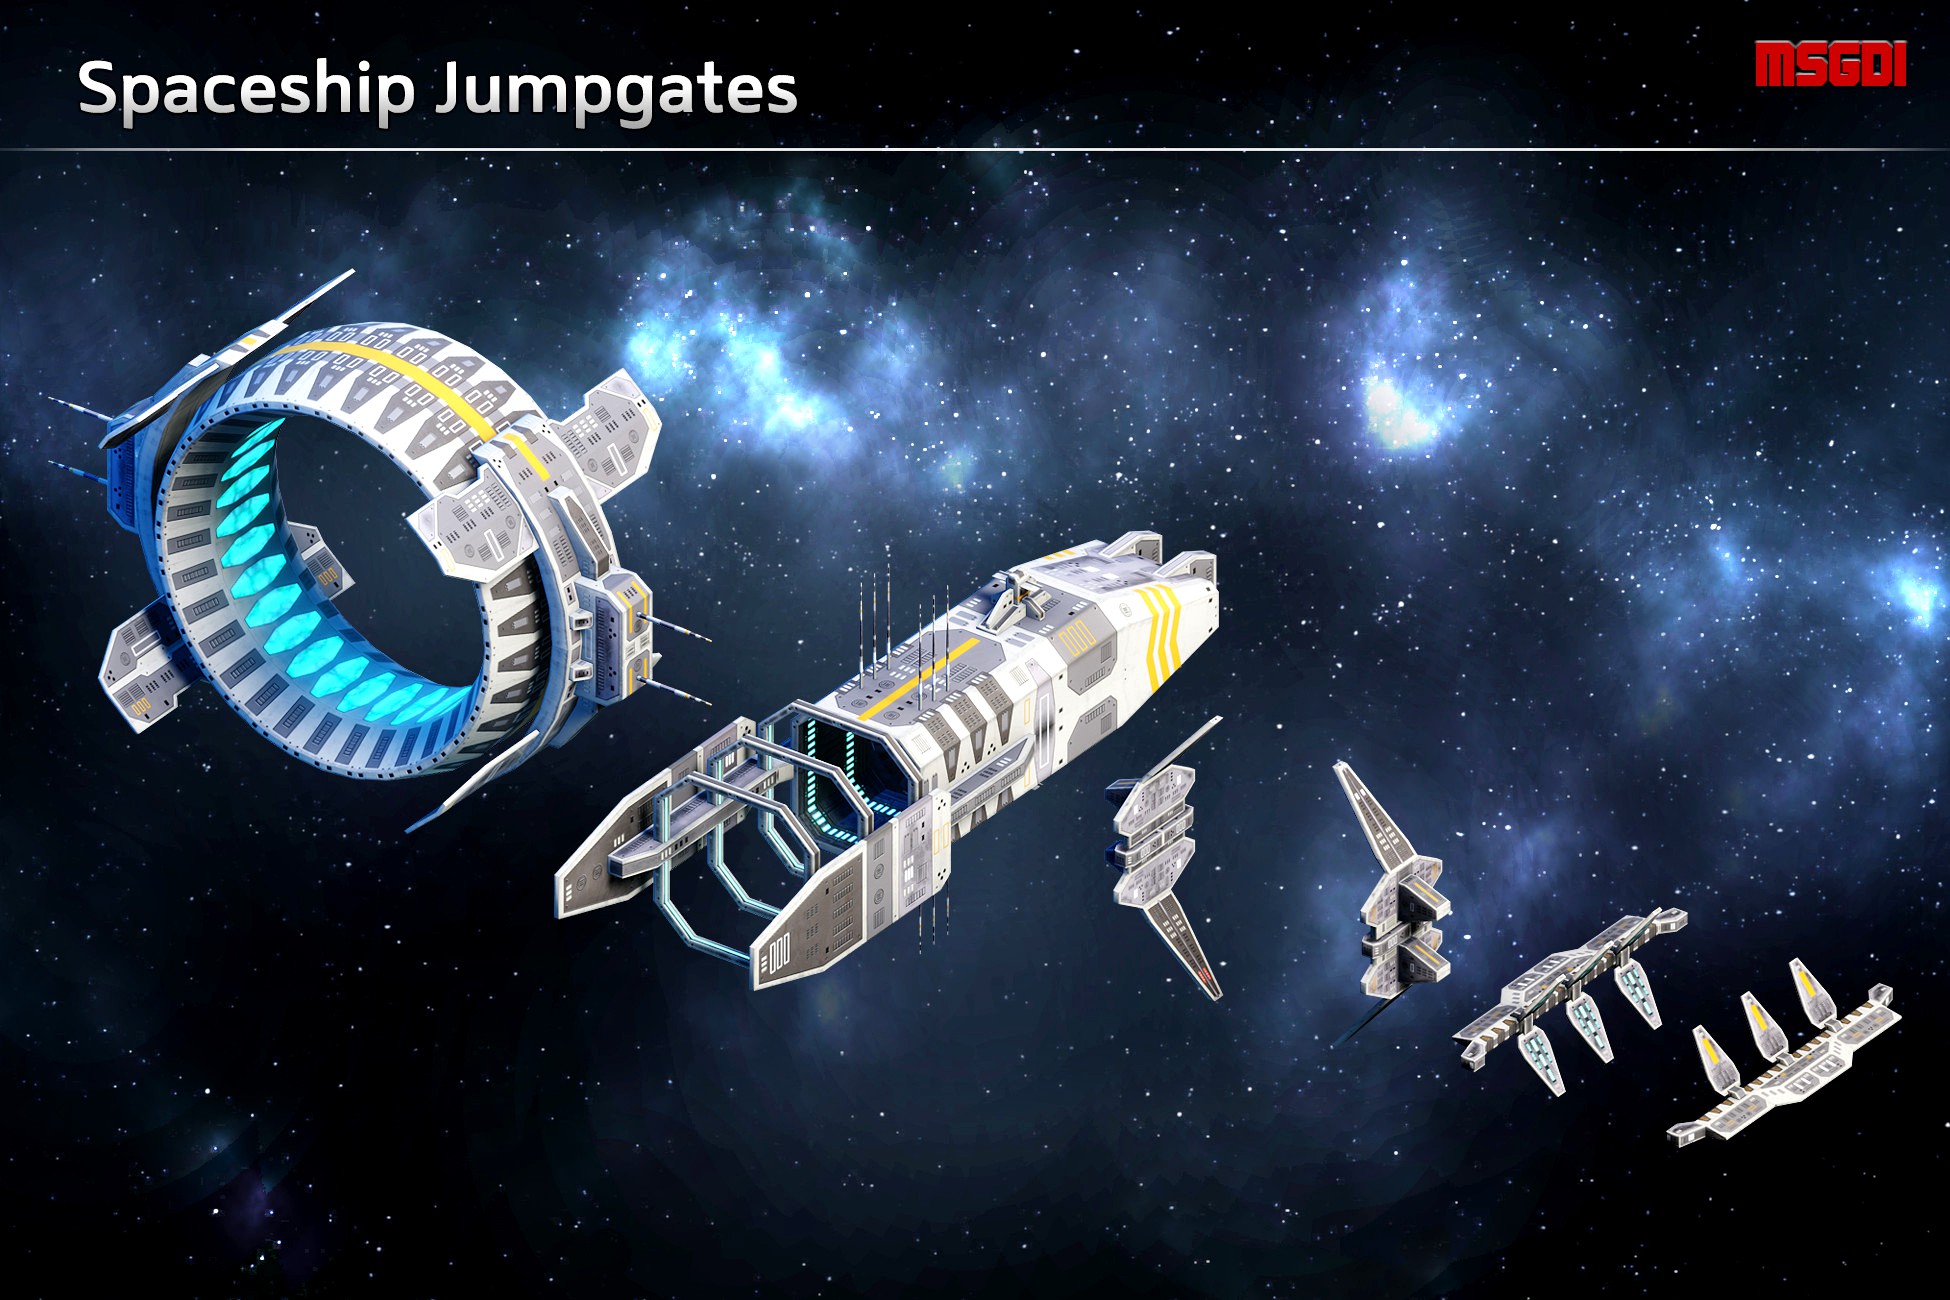 Spaceship Jumpgates